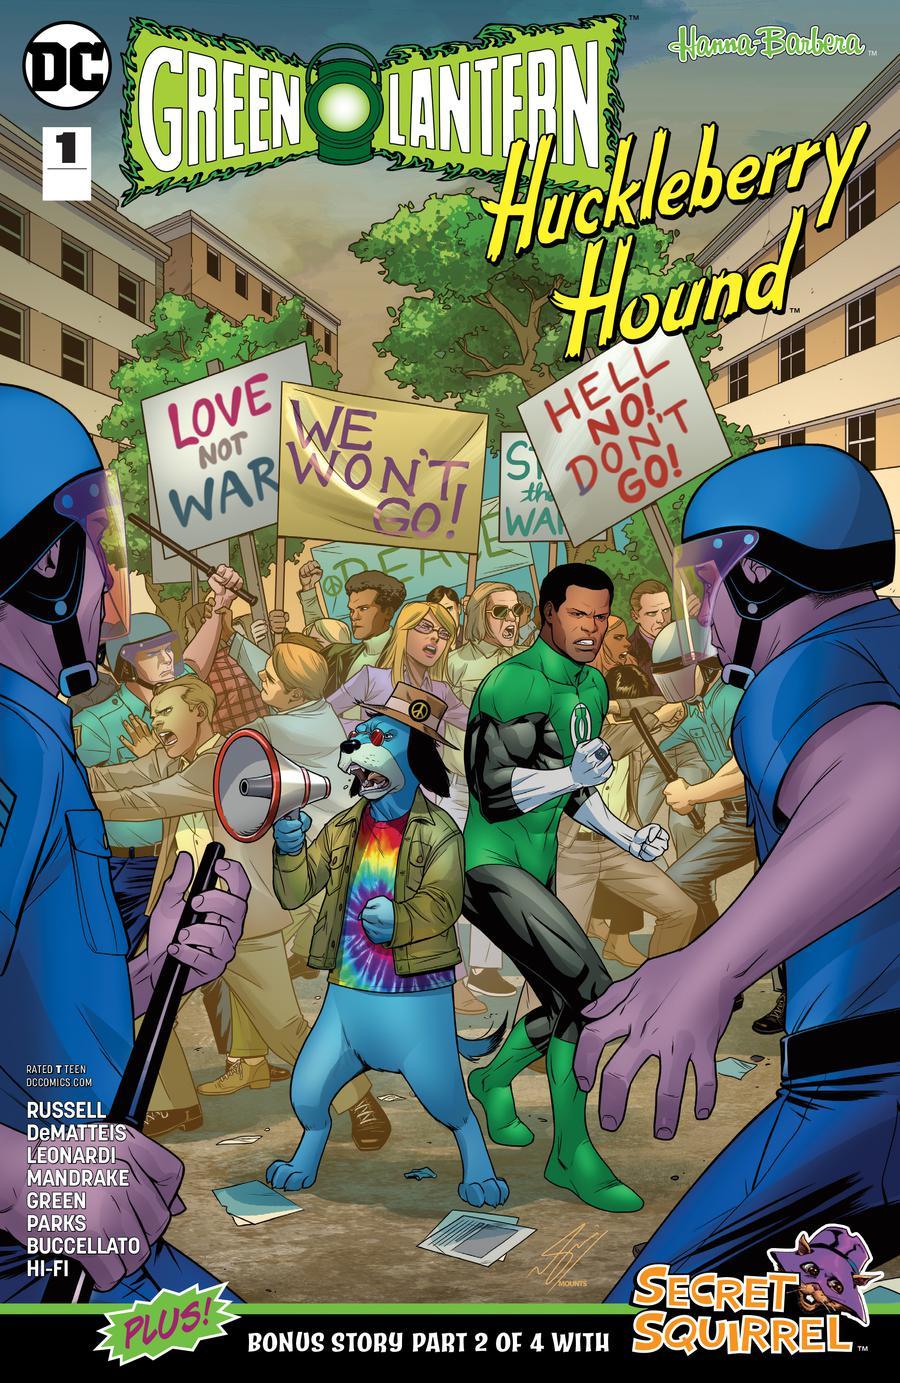 Green Lantern Huckleberry Hound Special Vol. 1 #1